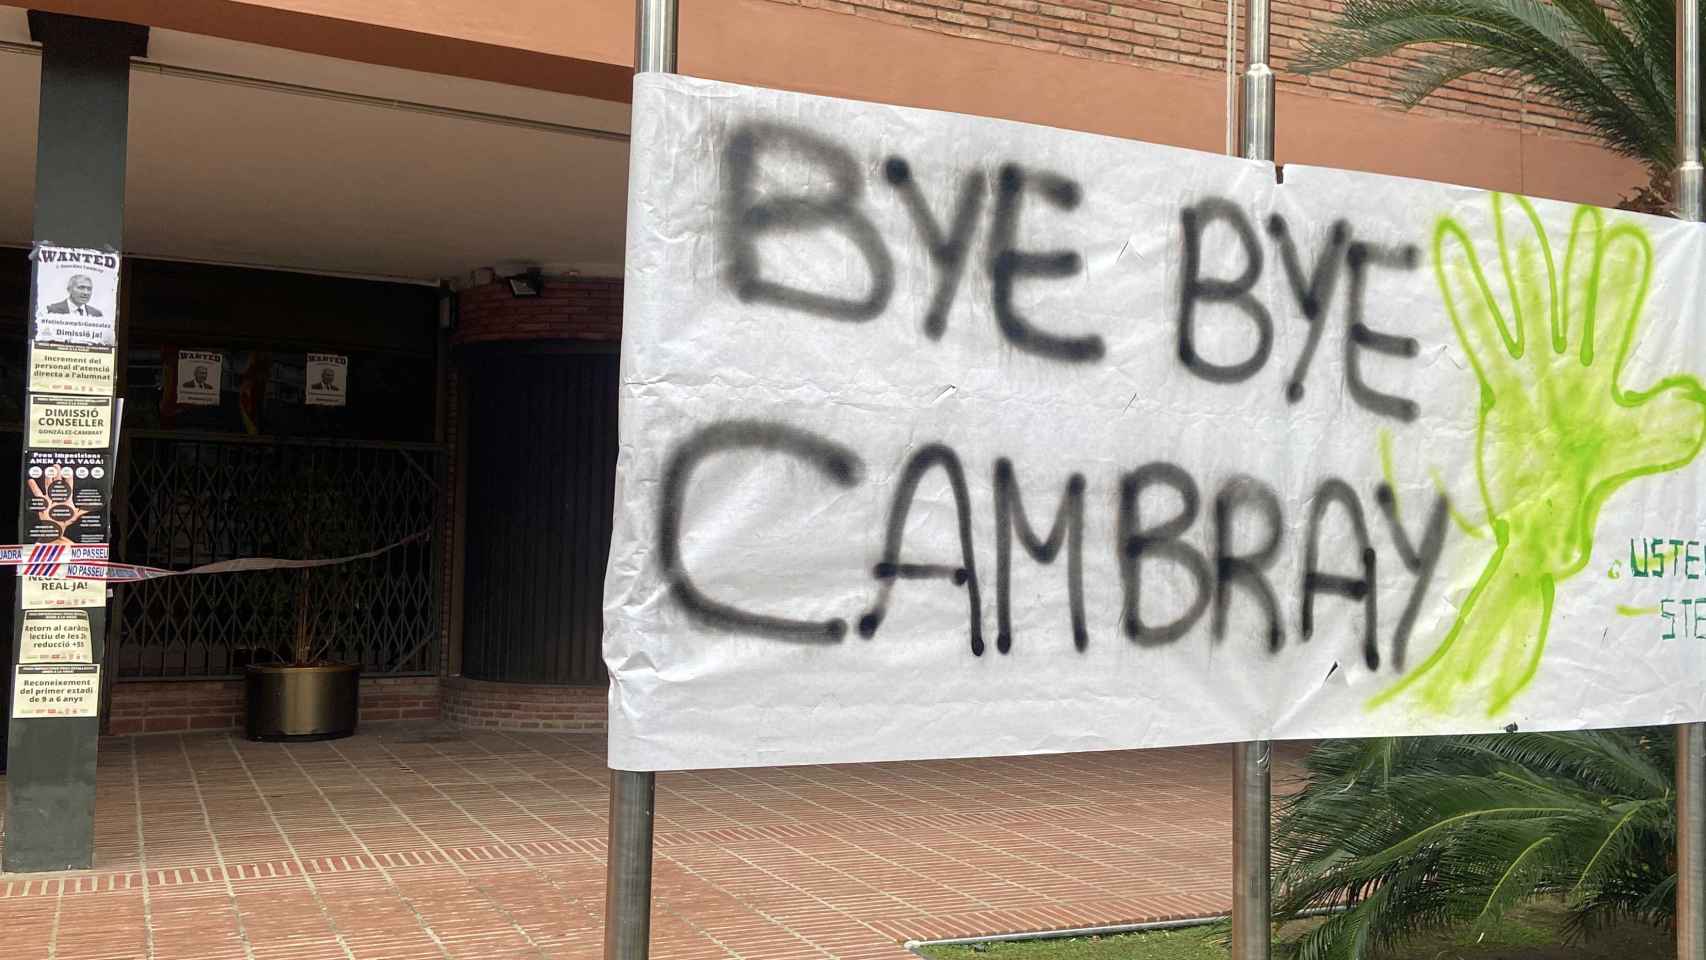 Los profesores piden la dimisión de Cambray y amenazan el inicio del próximo curso / CG